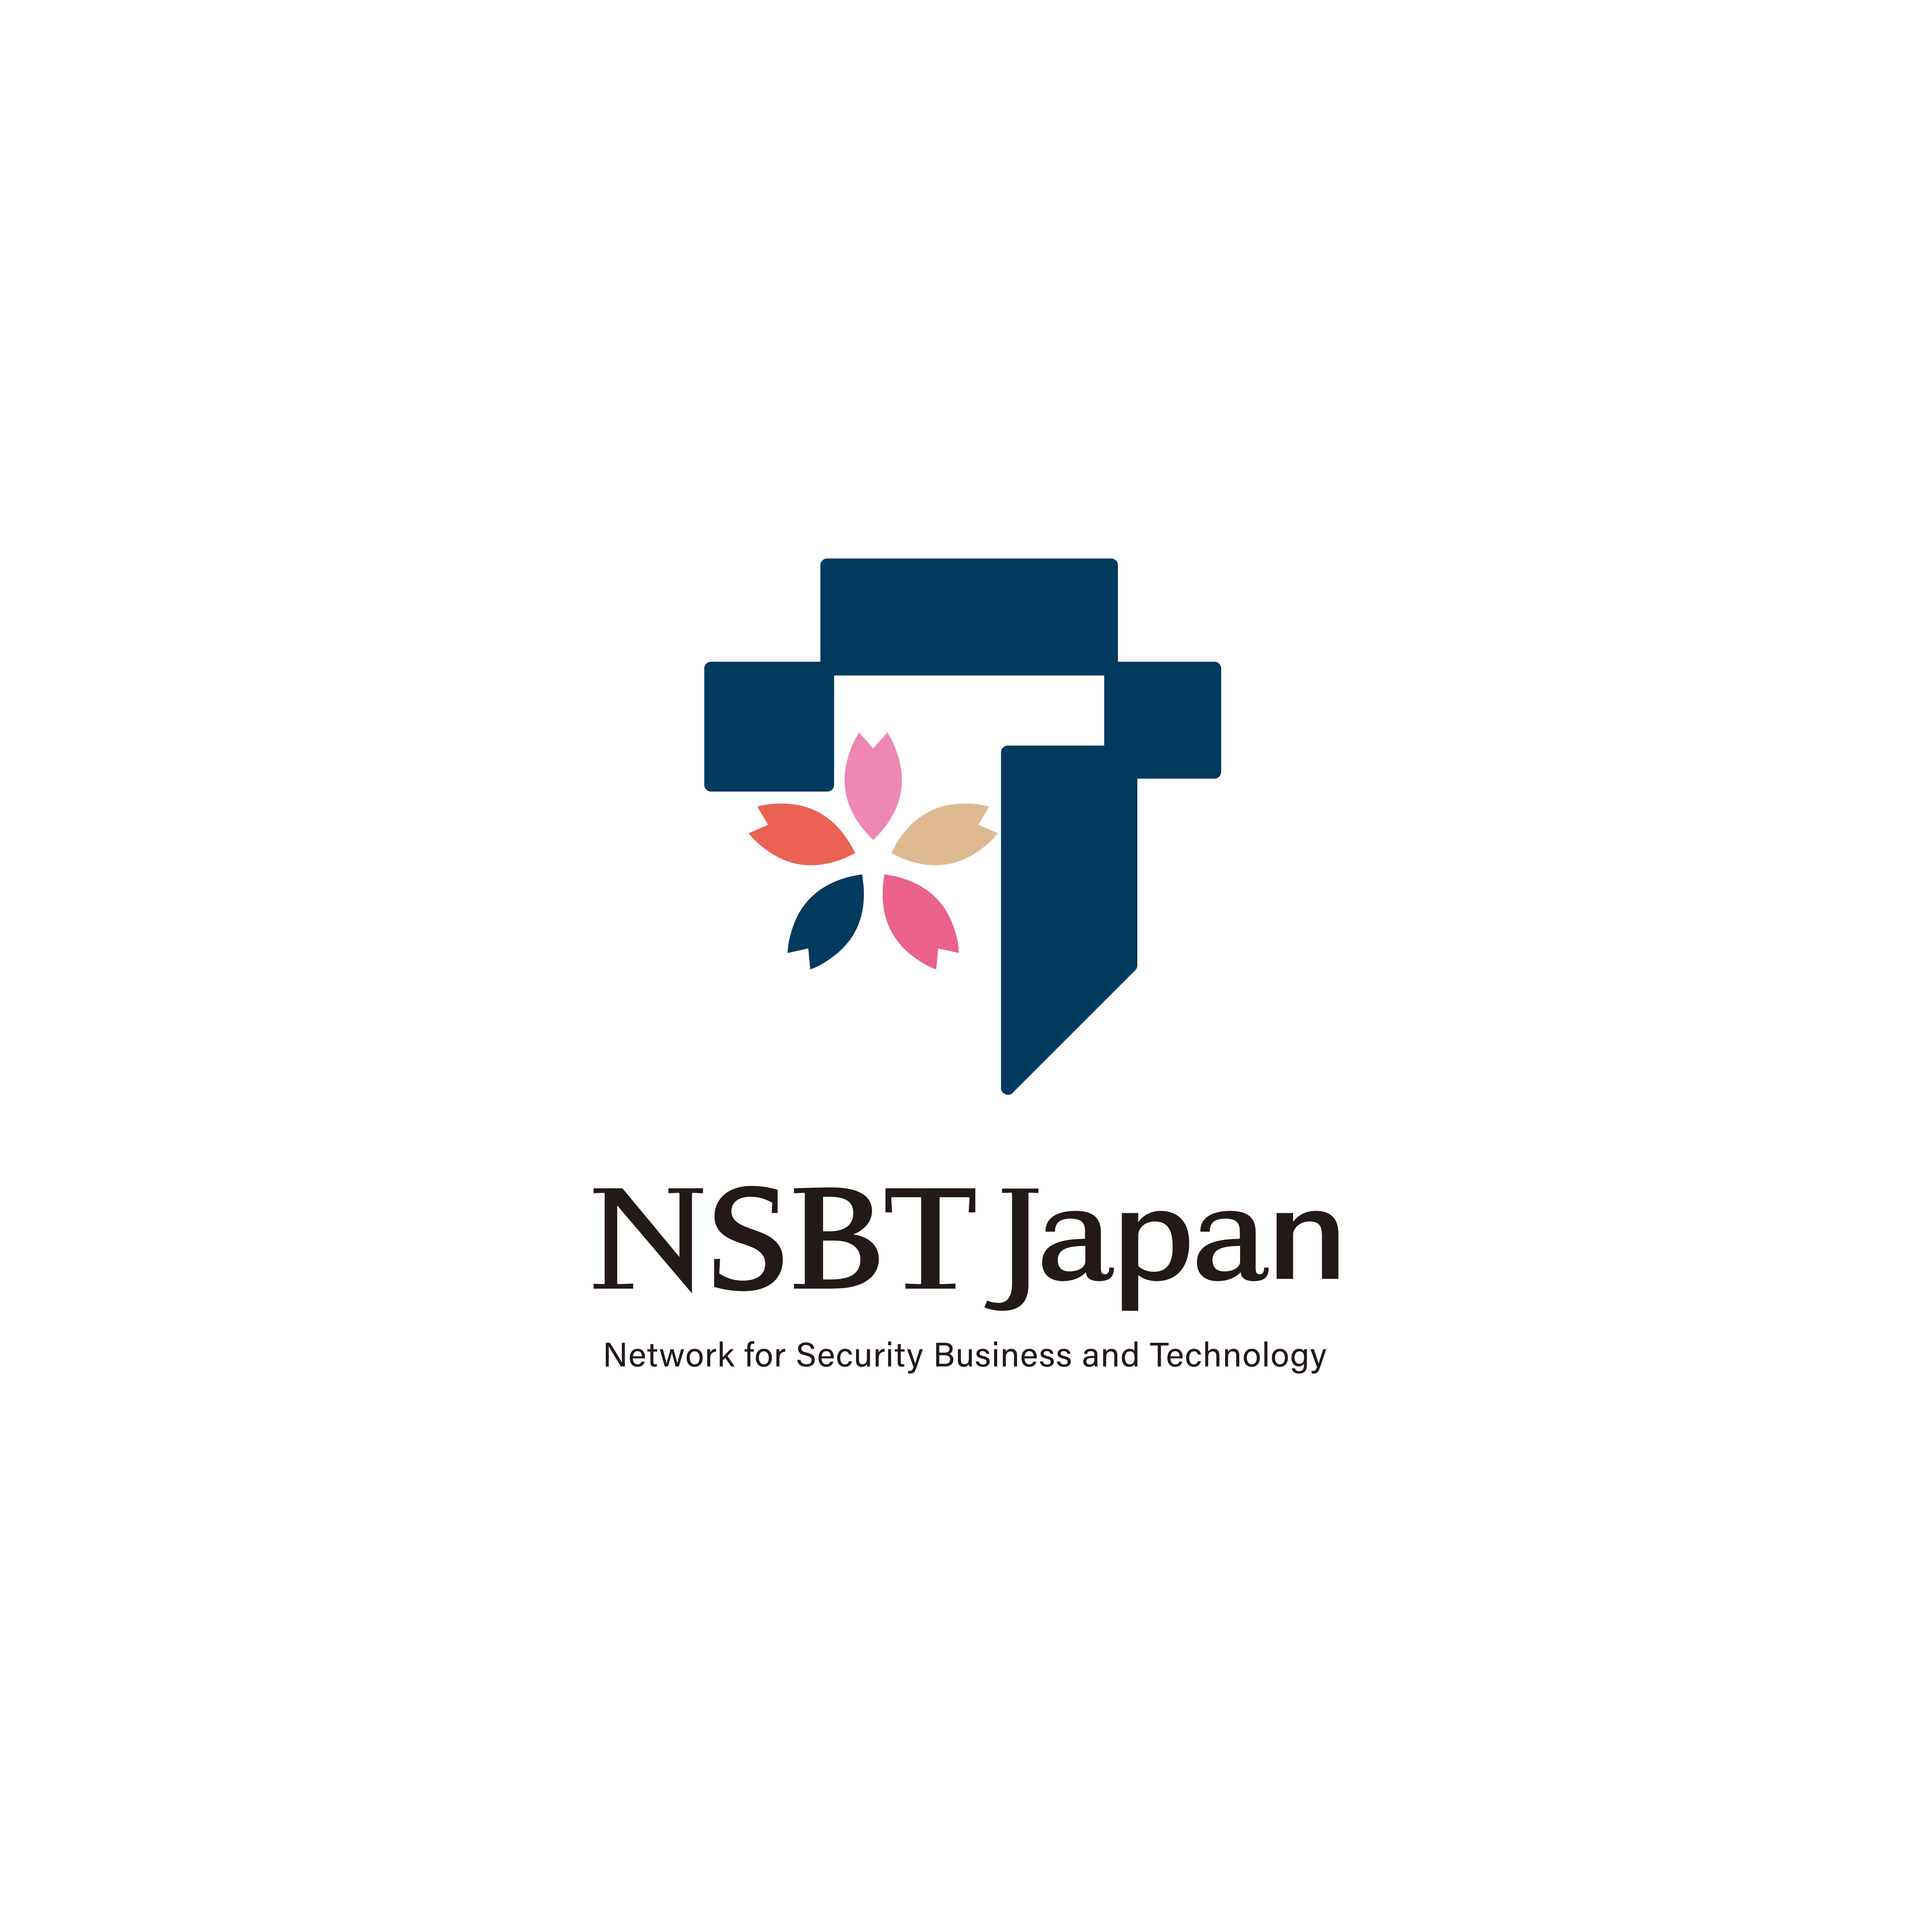 NSBT Japan